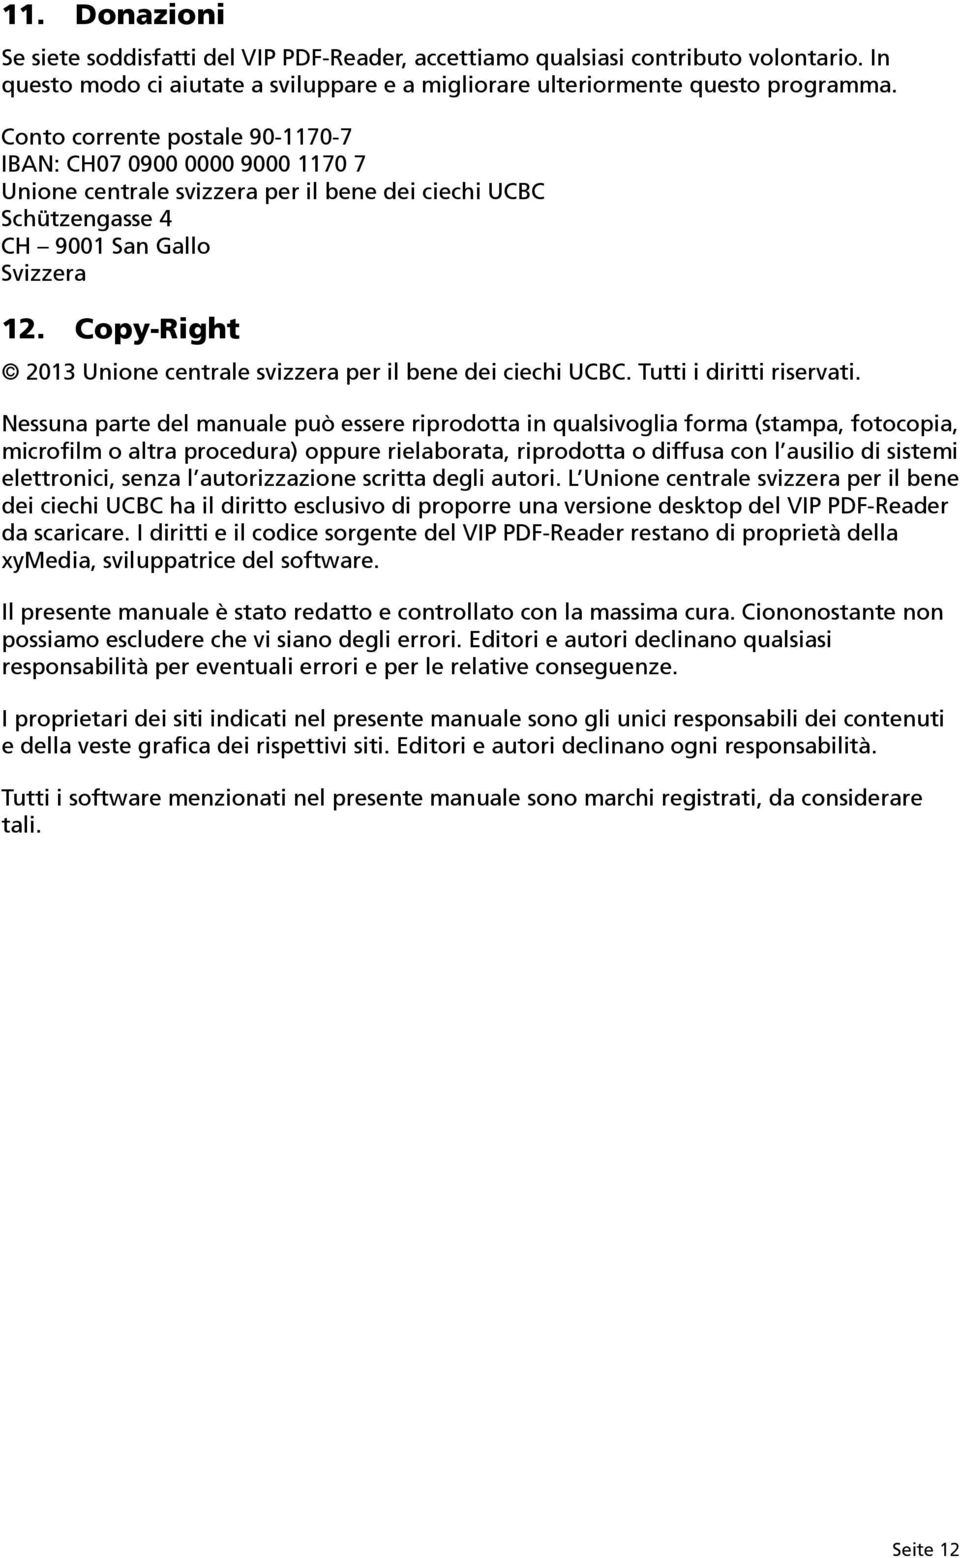 Copy-Right 2013 Unione centrale svizzera per il bene dei ciechi UCBC. Tutti i diritti riservati.